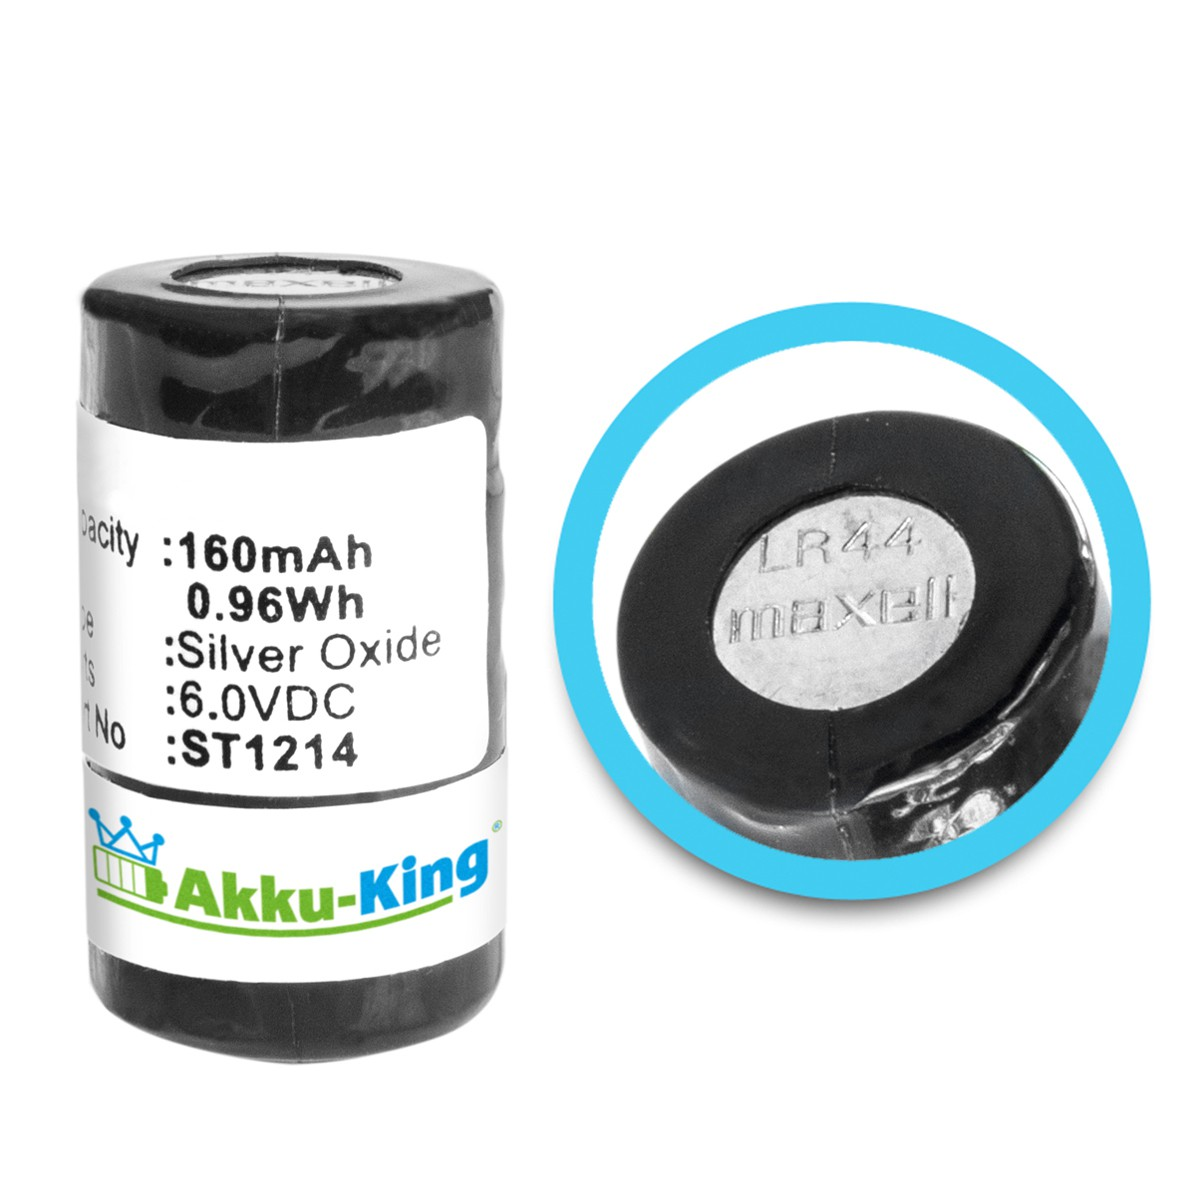 Geräte-Akku, Li-SOCl2 ST1214 AKKU-KING mit Akku Guard 160mAh Volt, kompatibel 6.0 Dog